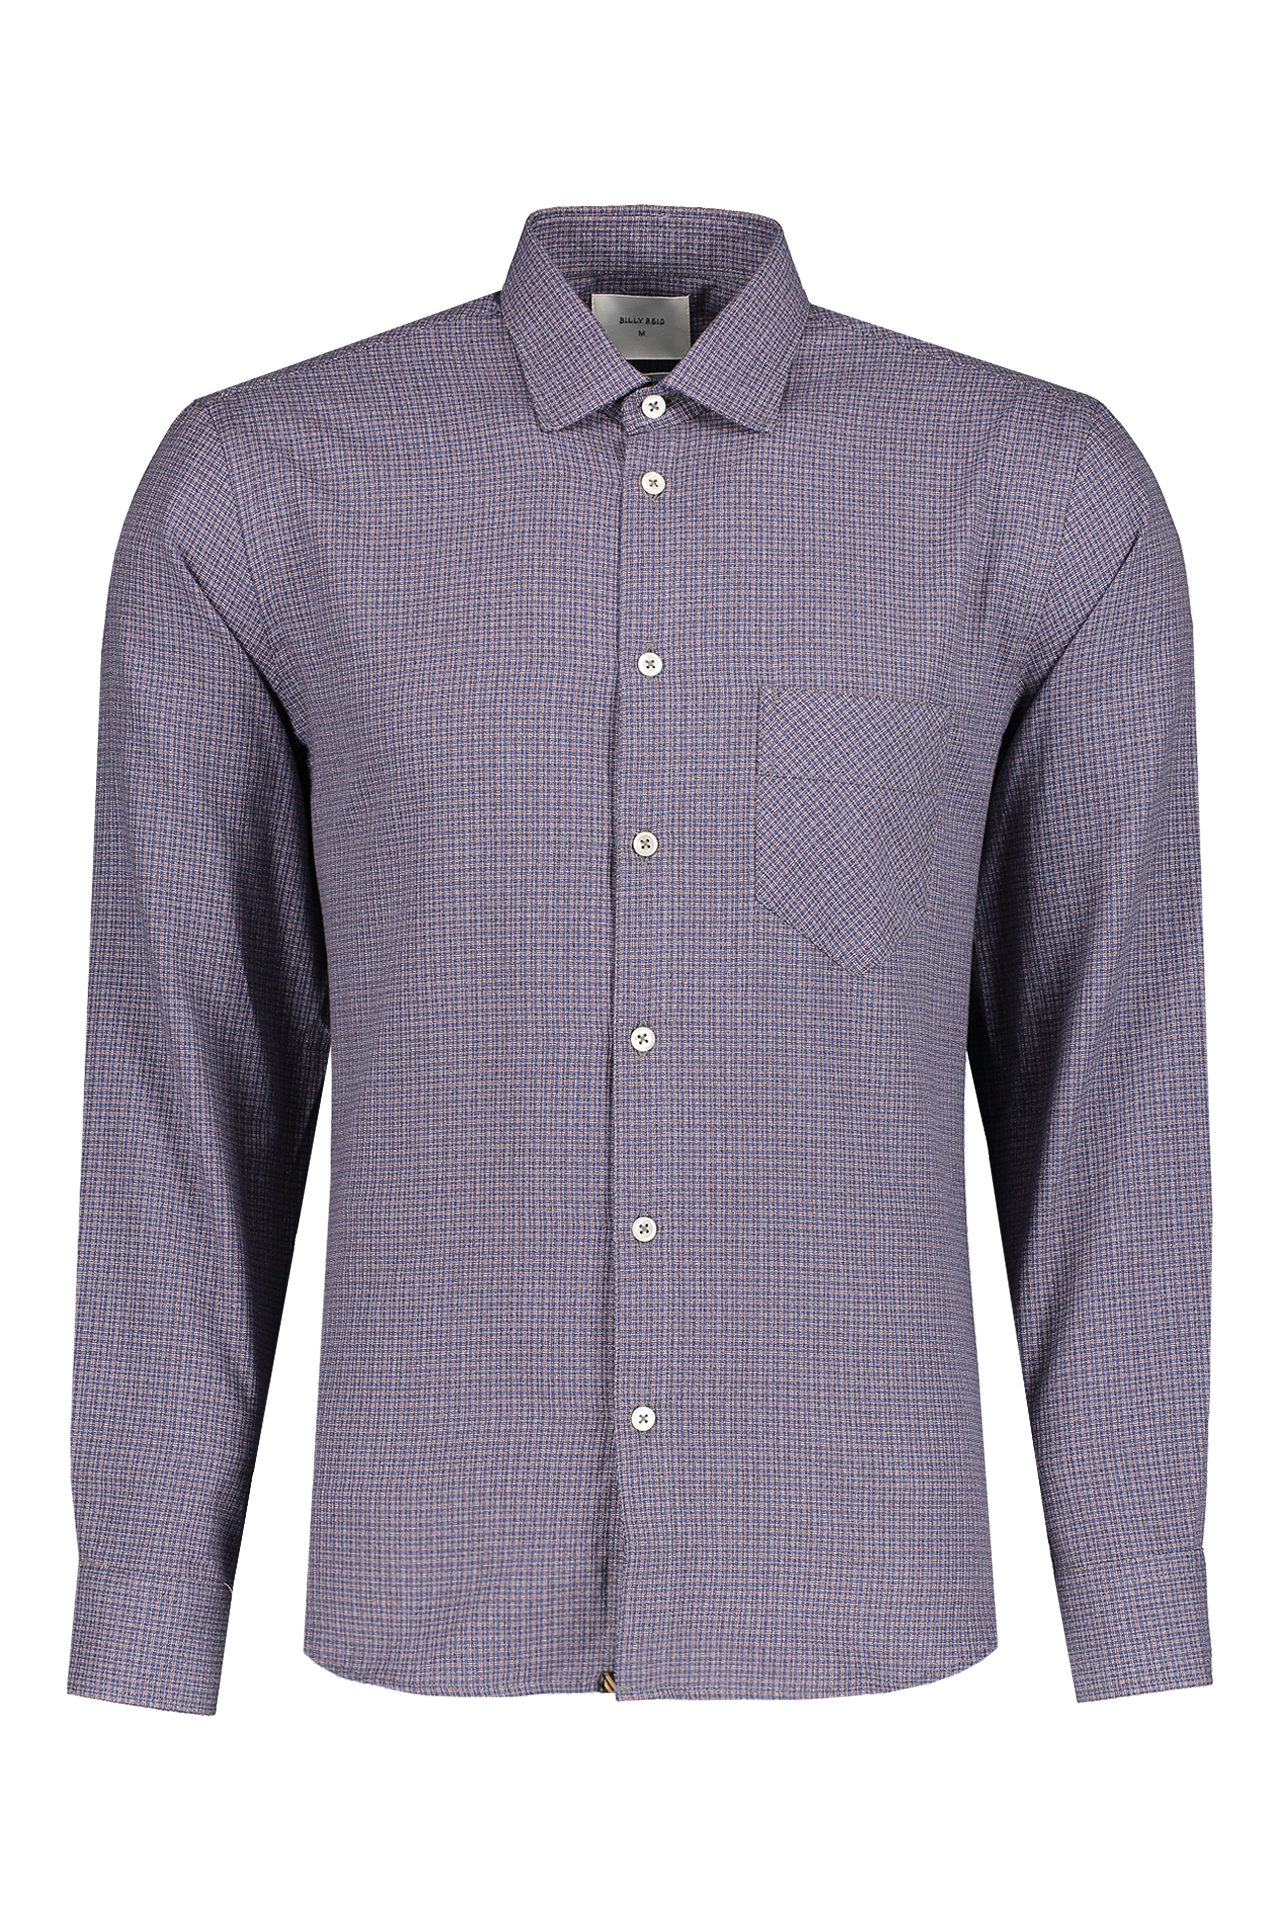 Billy Reid Mens John T Woven Button-Down Shirt